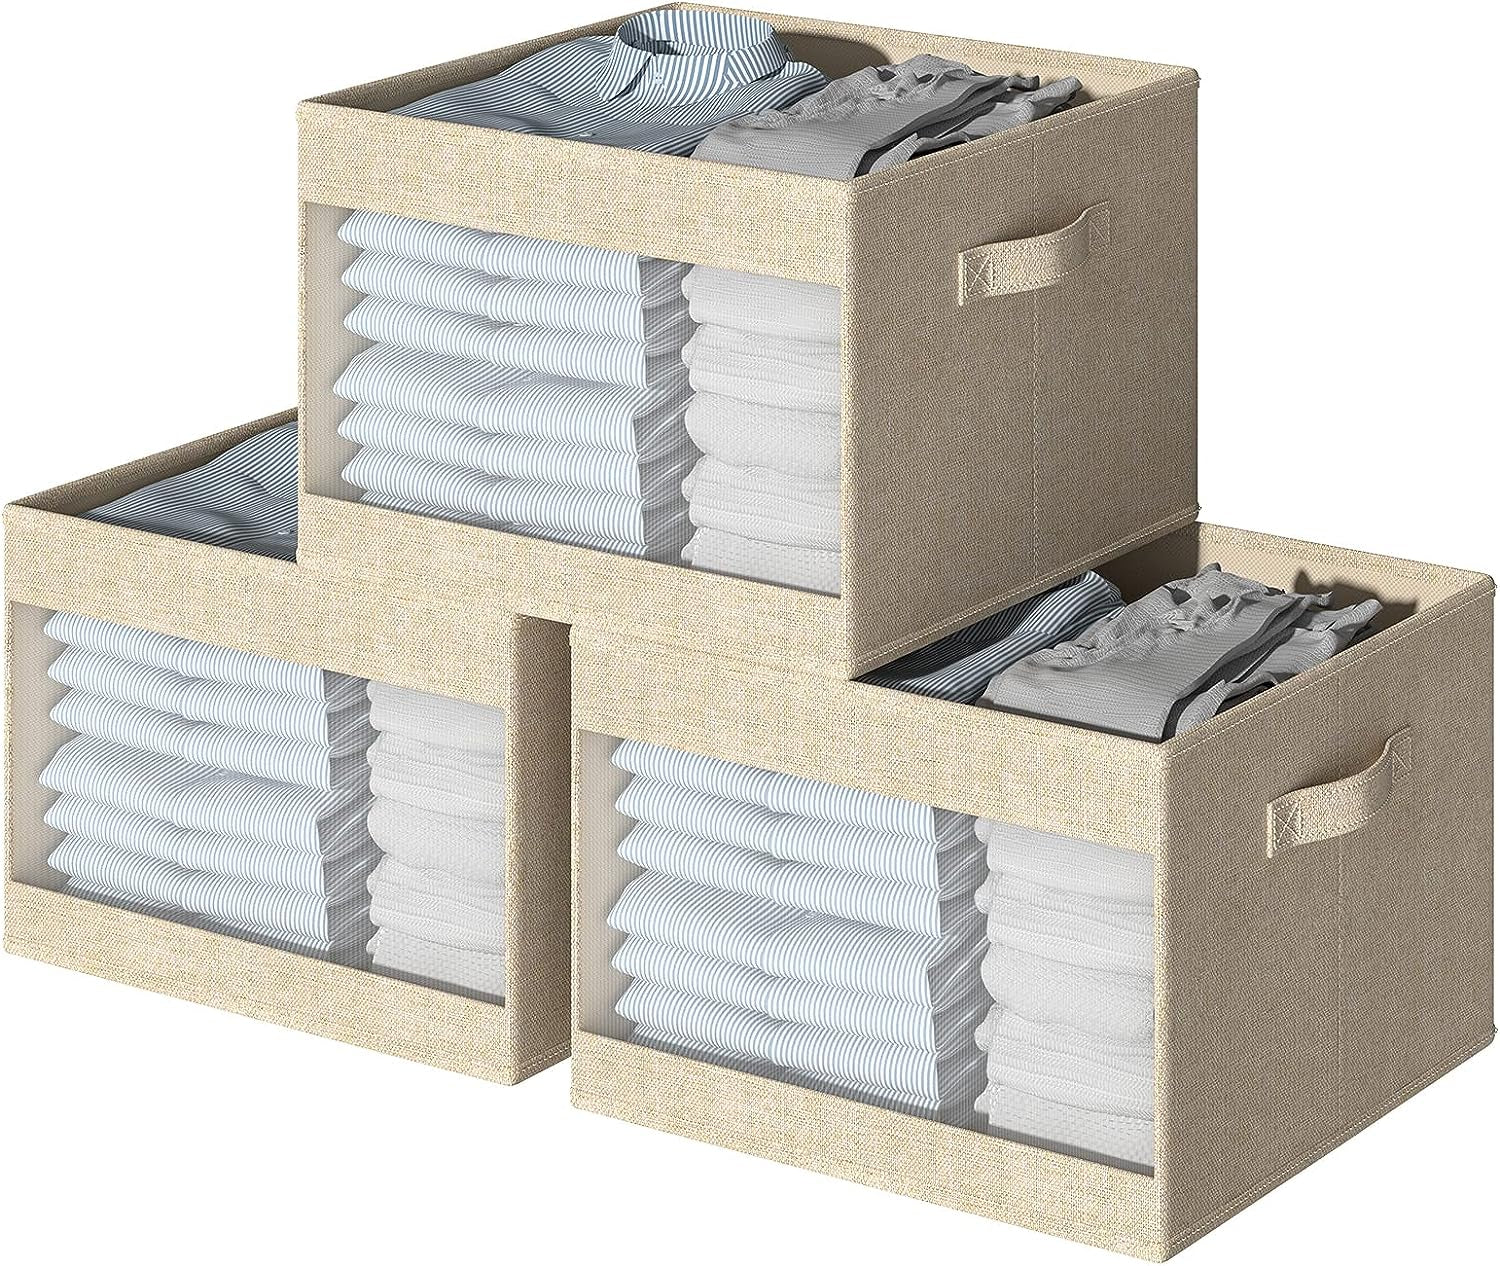 Blushbees® Clear Window Closet Storage Bins - 3 Pack (Beige)